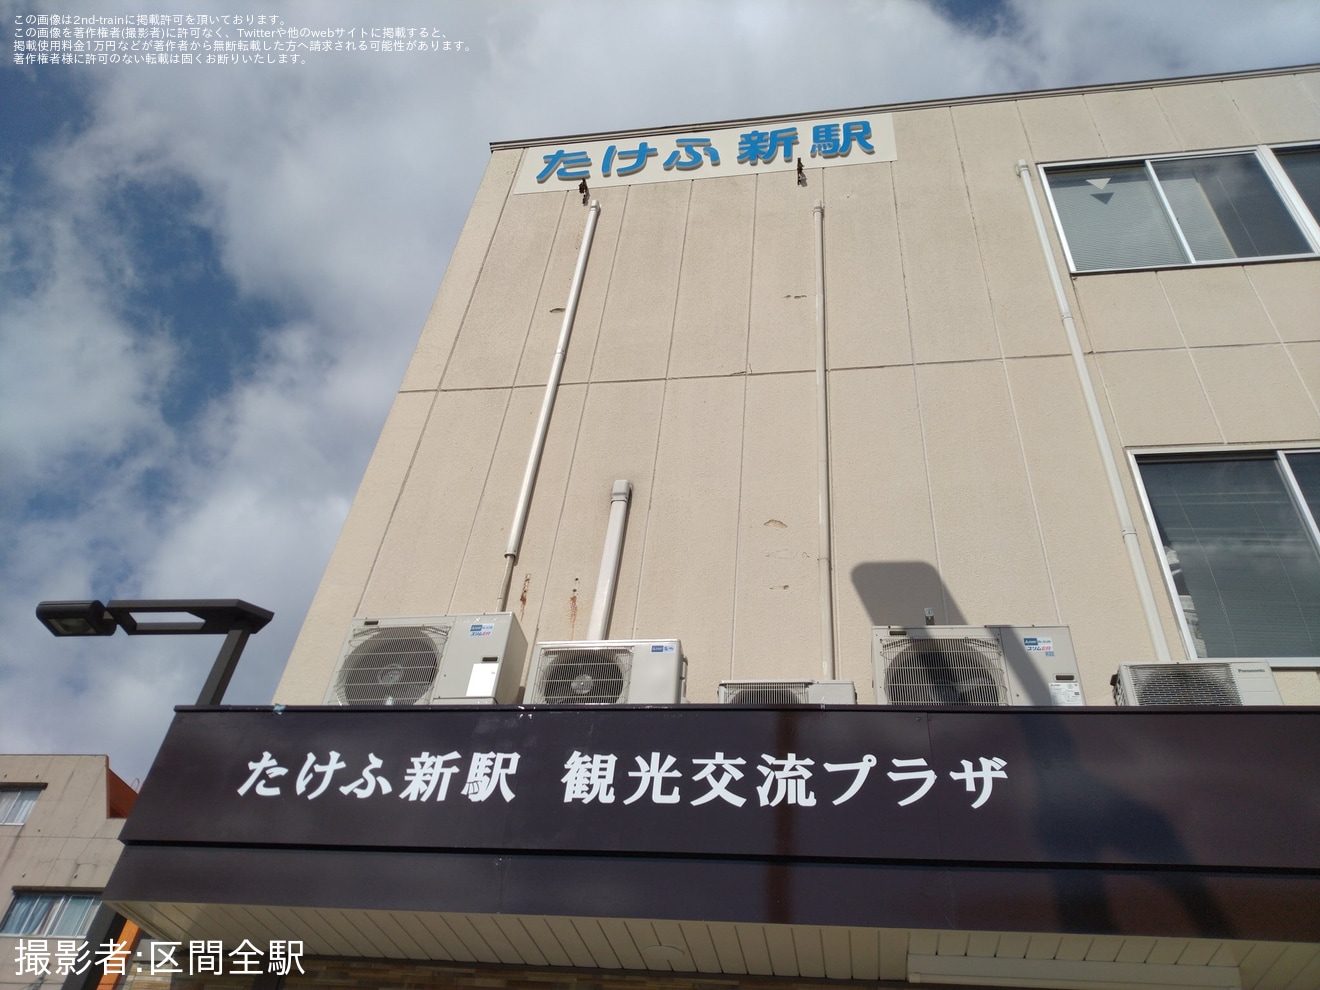 【福鉄】「越前武生駅」が「たけふ新駅」として営業開始の拡大写真